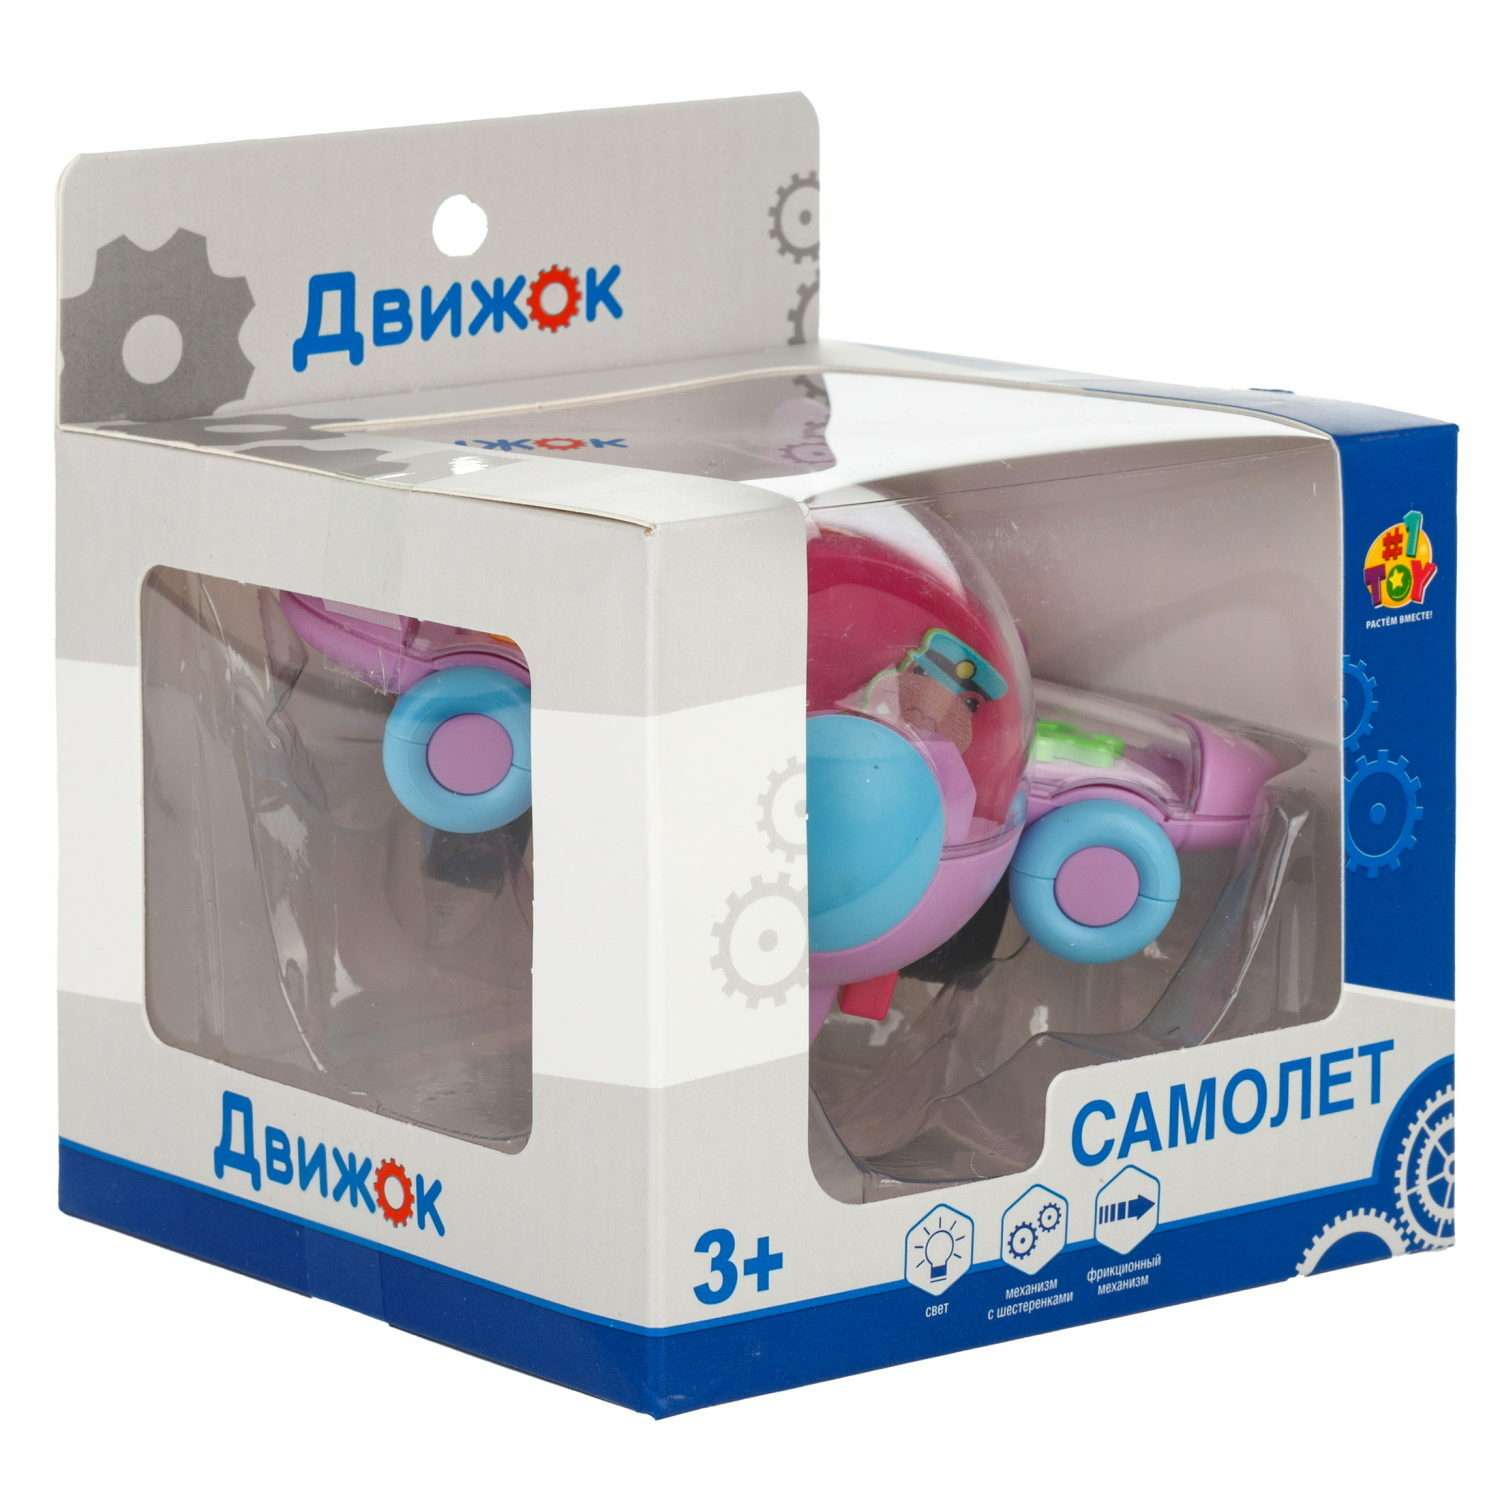 Самолет игрушка для детей 1TOY Движок розовый прозрачный с шестеренками светящийся на батарейках - фото 7